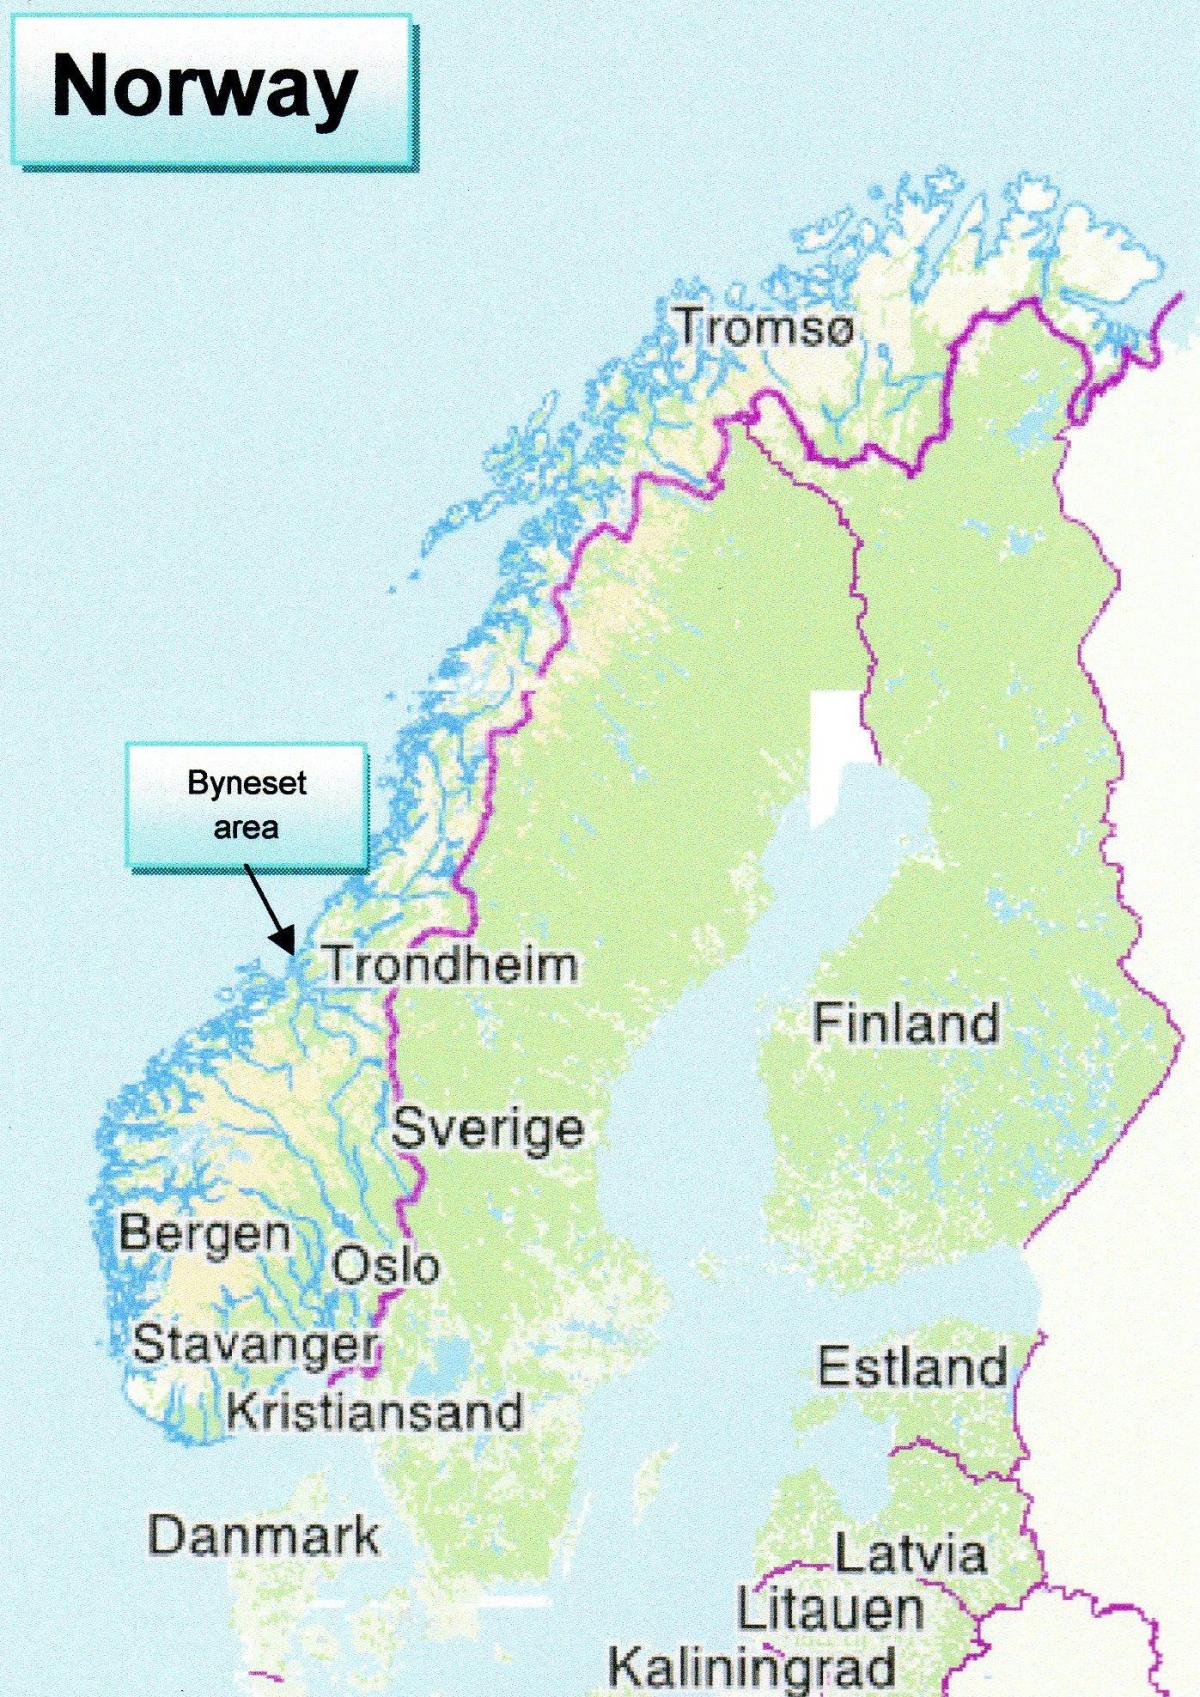 Χάρτης του τρόντχαϊμ, Νορβηγία